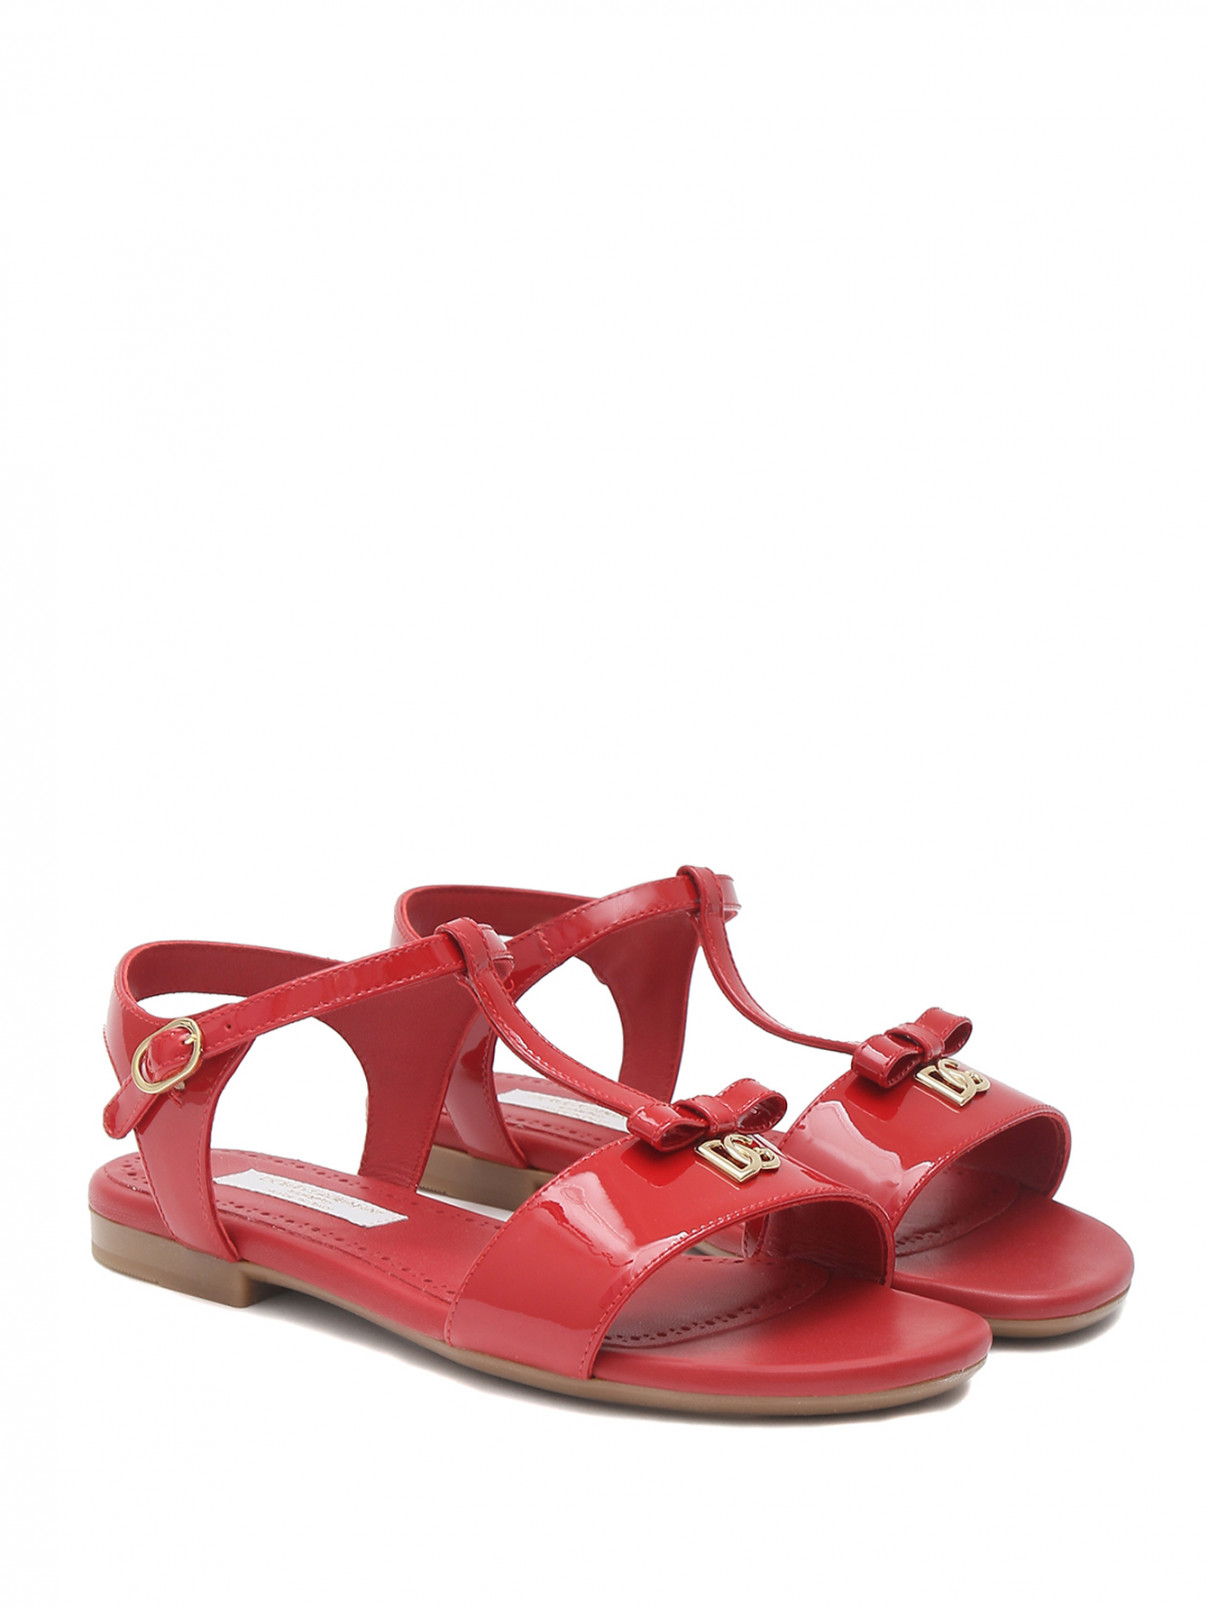 Босоножки из лакированной кожи Dolce & Gabbana  –  Общий вид  – Цвет:  Красный